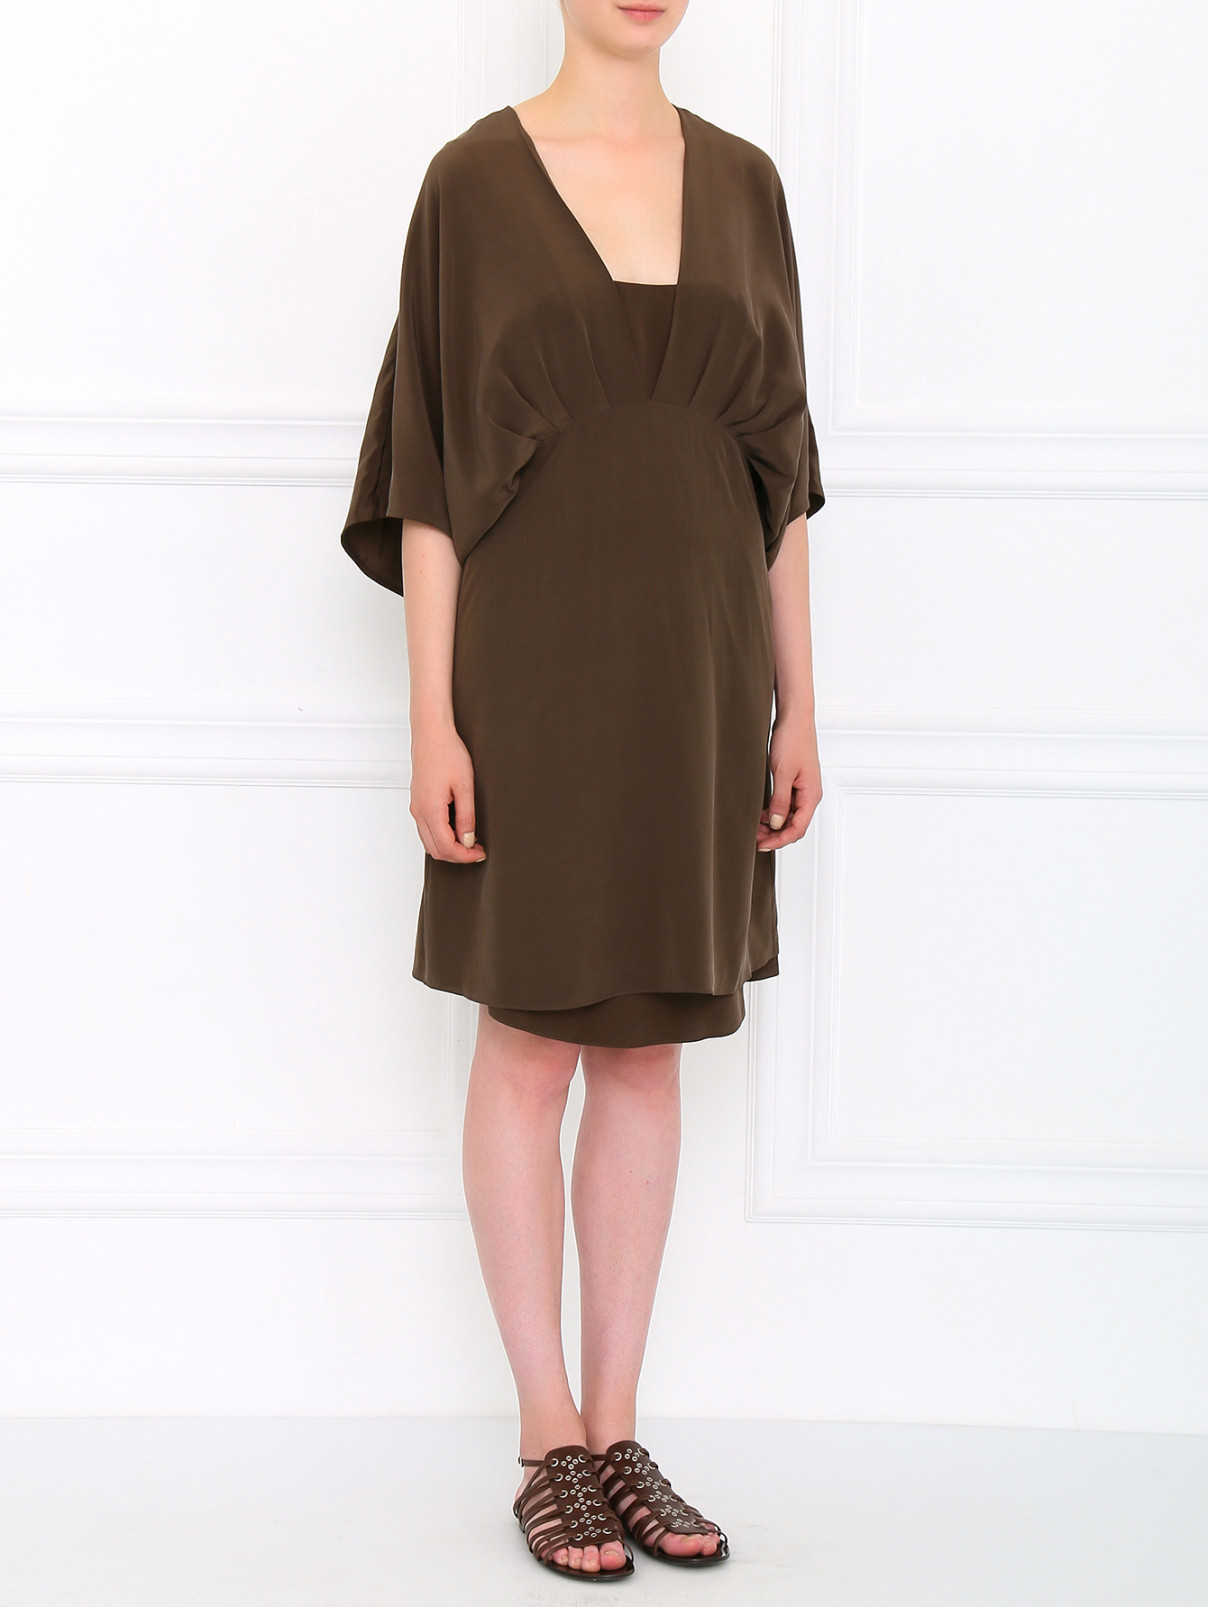 Шелковое платье с V-образным вырезом Barbara Bui  –  Модель Общий вид  – Цвет:  Коричневый